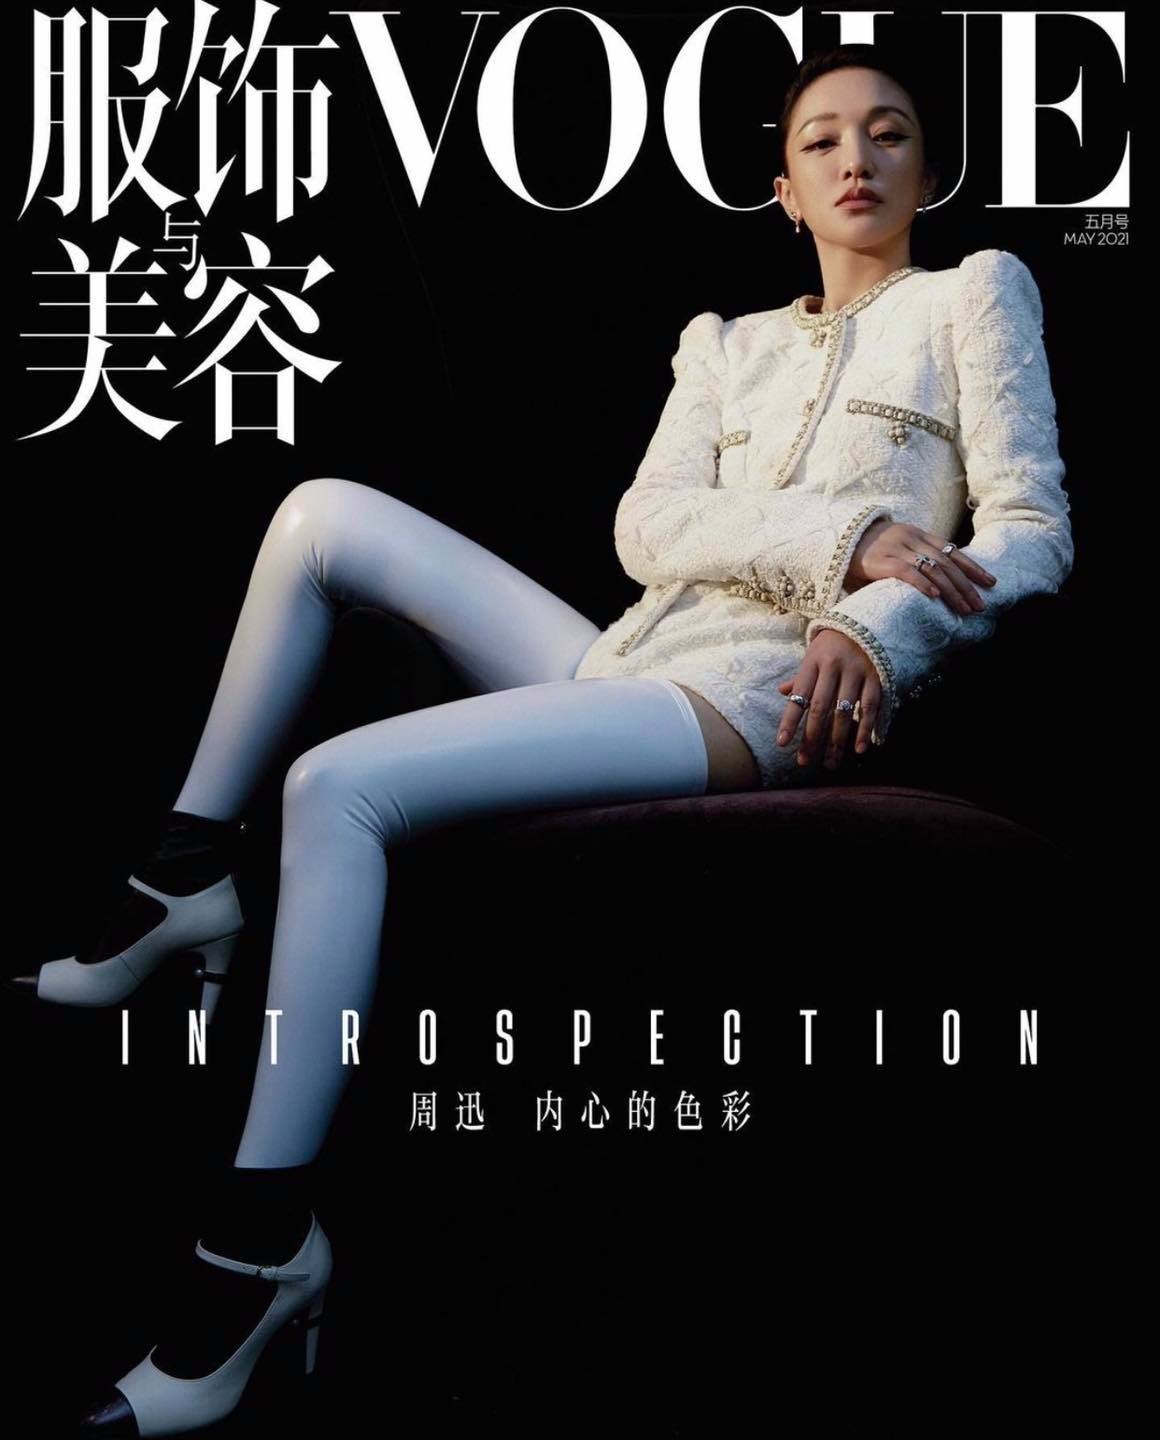 Hiện tại Châu Tấn là Đại sứ thương hiệu của Chanel tại Trung Quốc. Vì vậy, cô diện toàn bộ đồ của nhà mốt Pháp lên bìa Vogue